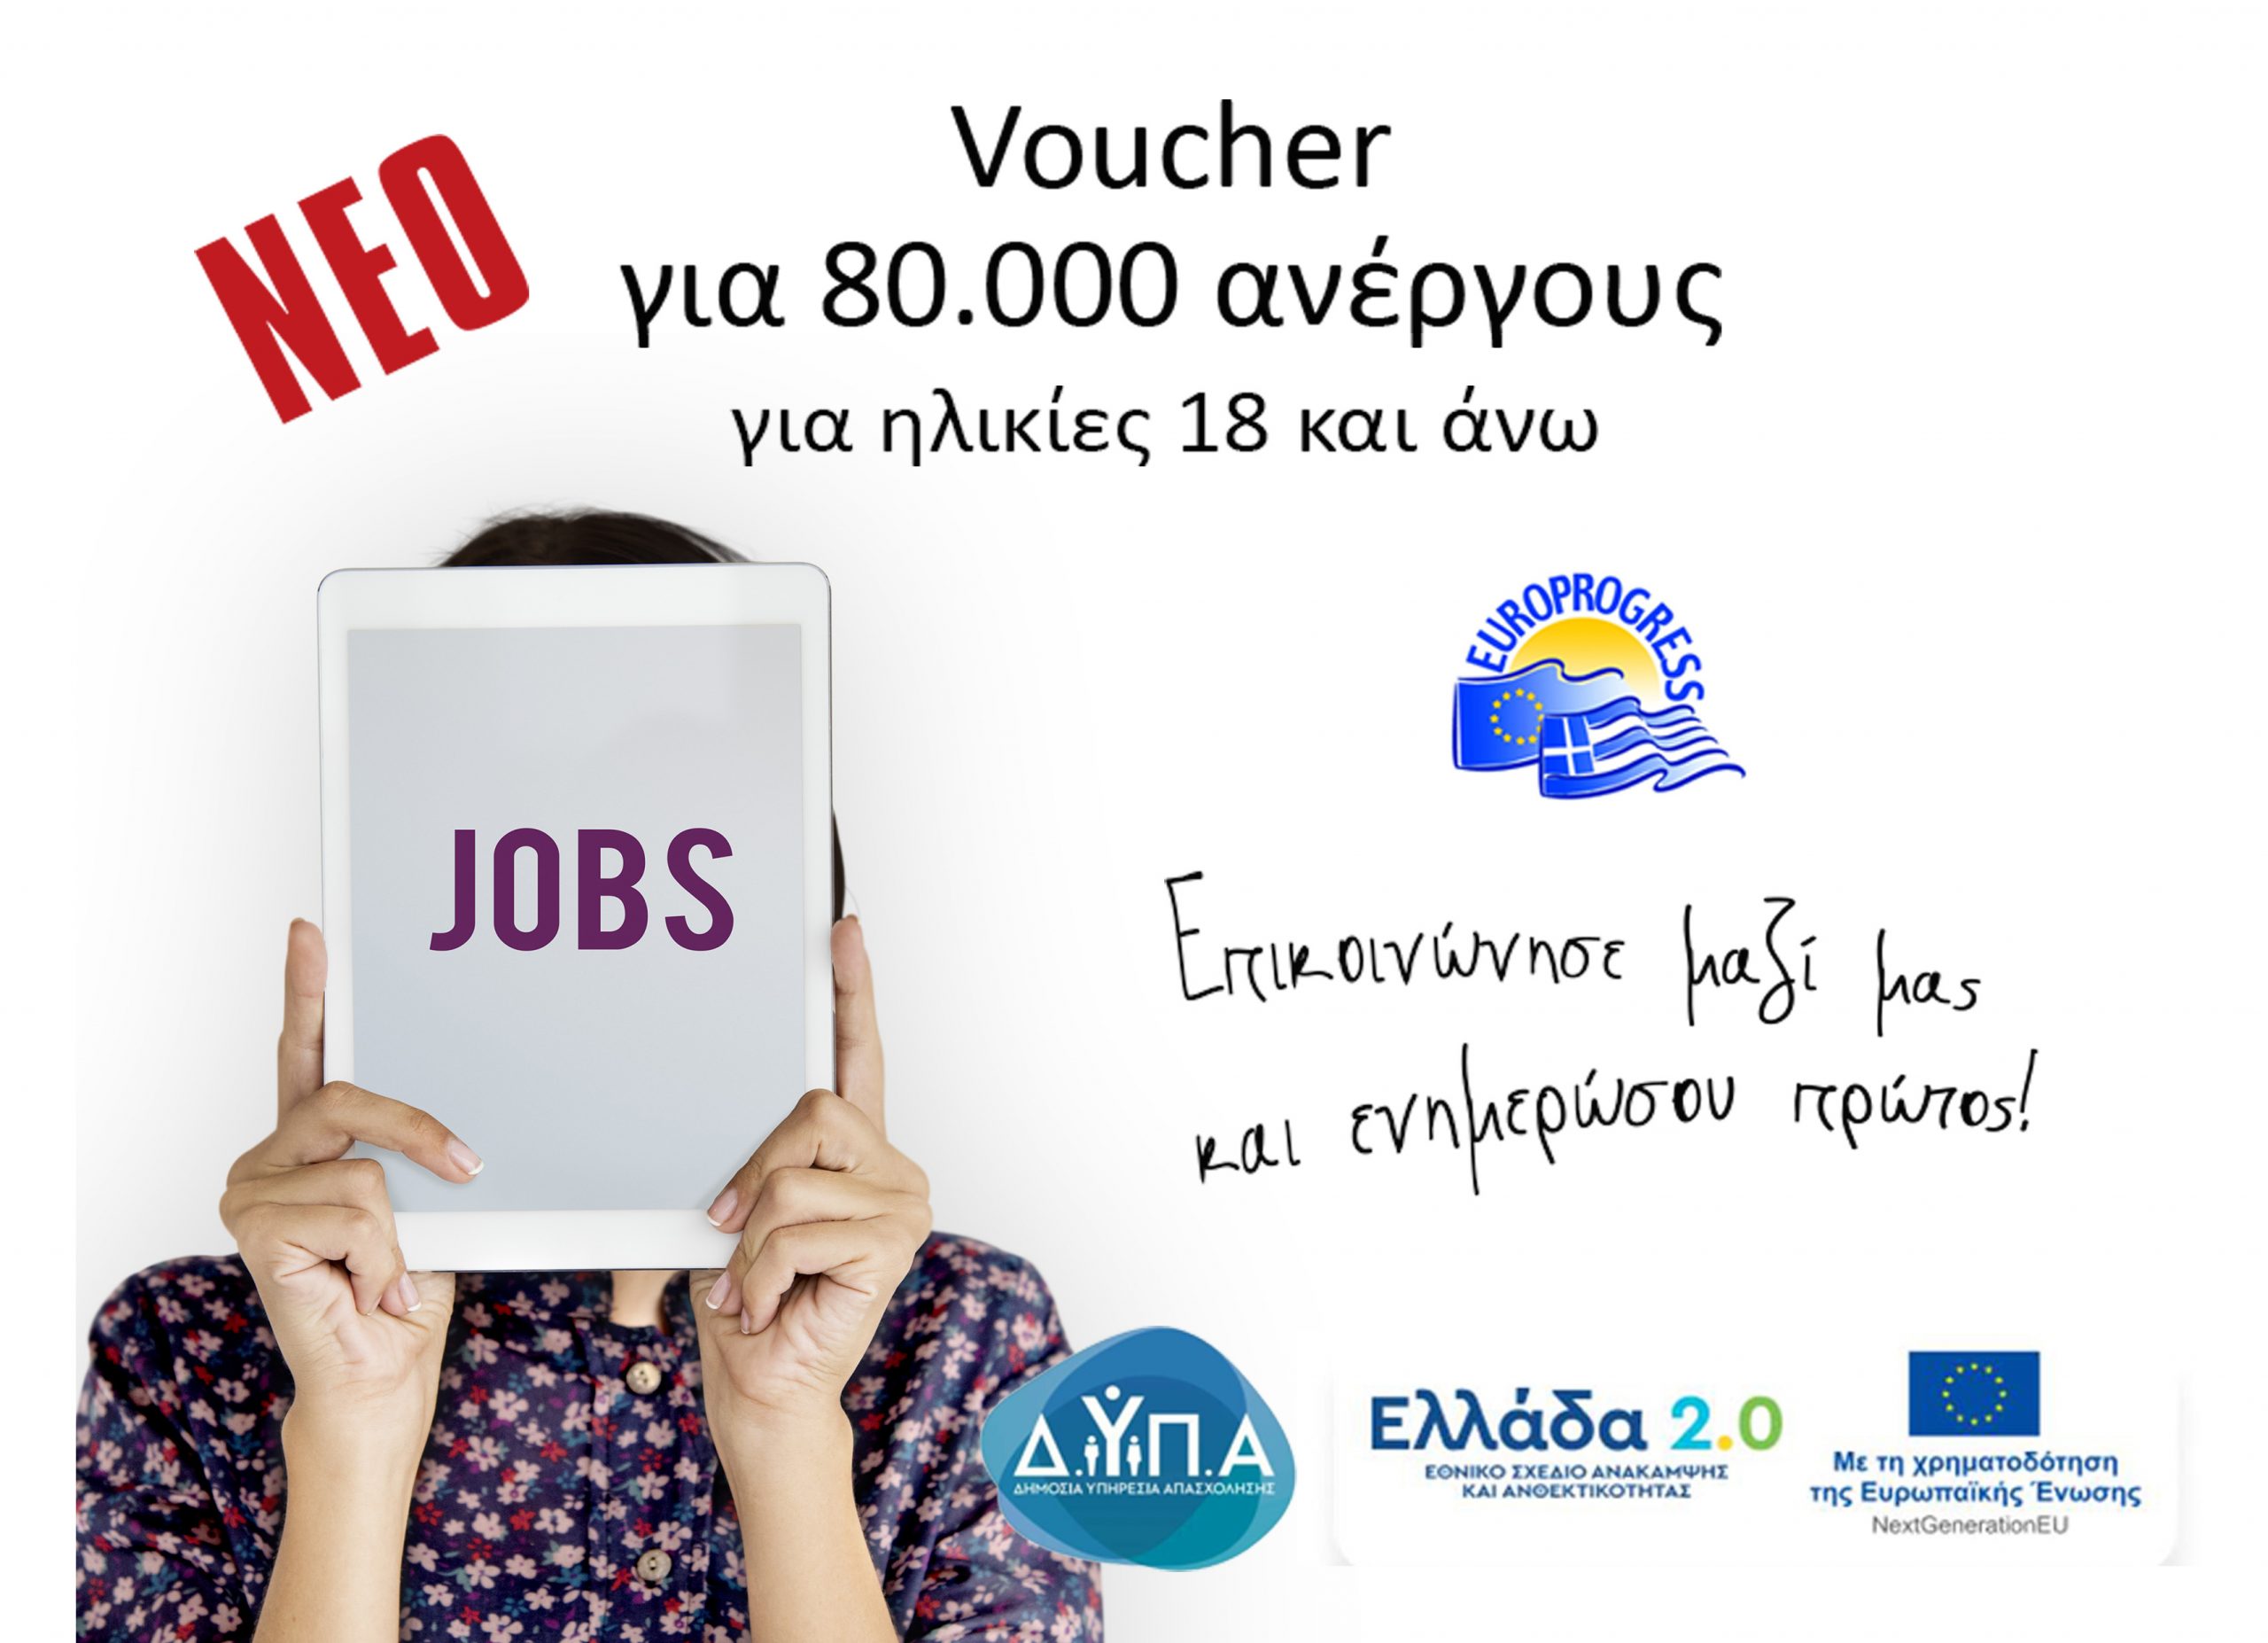 Νέο Επιδοτούμενο πρόγραμμα κατάρτισης VOUCHER 80.000 Ανέργων, με εκπαιδευτικό επίδομα έως 1000€